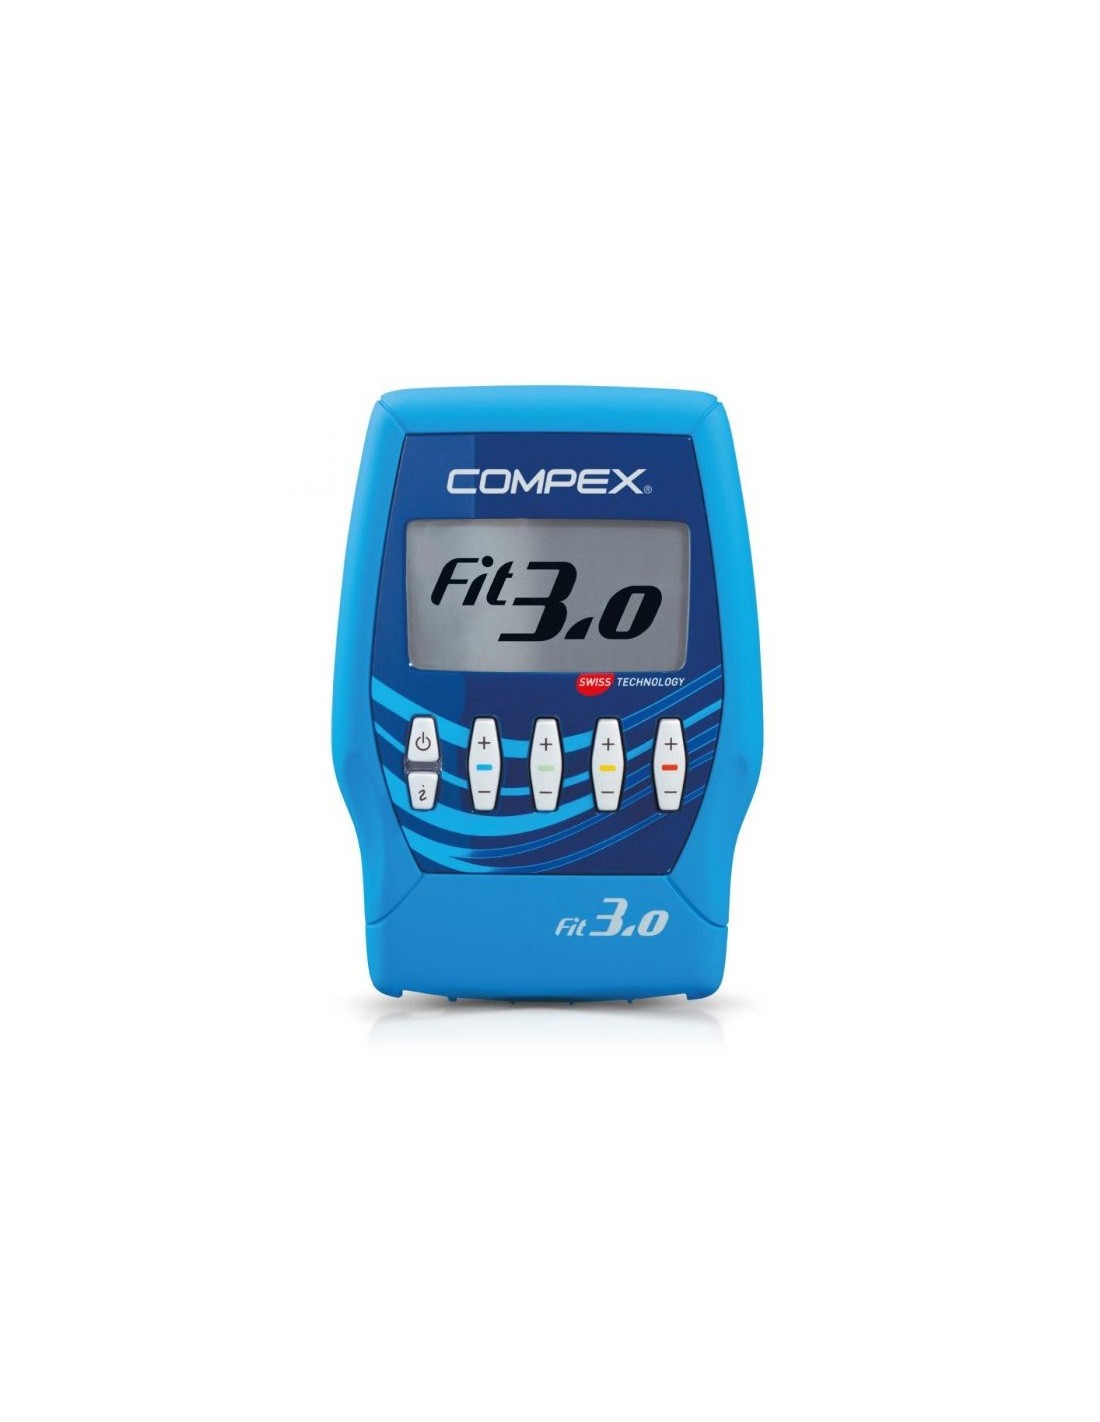 Compex Fit 3.0 Electroestimulator, Blue